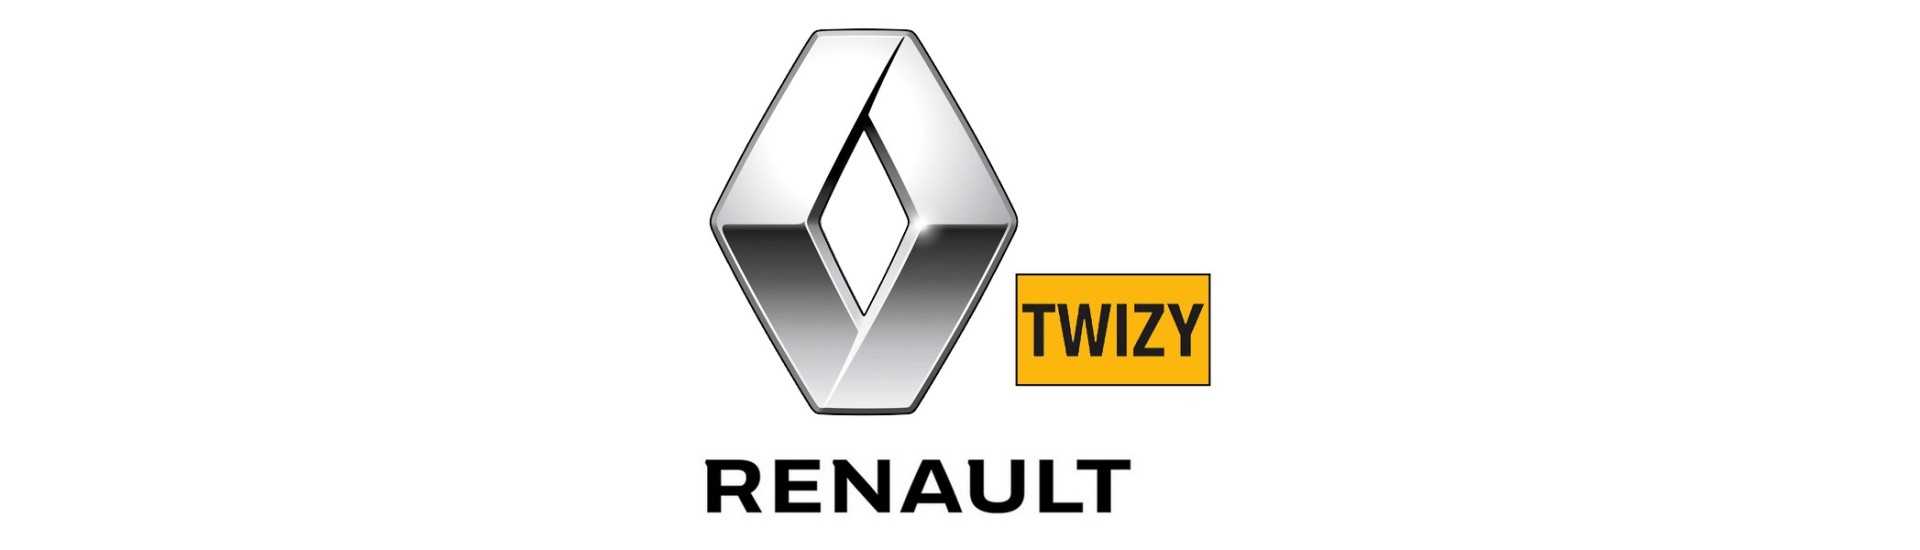 Commodo al miglior prezzo per auto senza permesso Renault Twizy